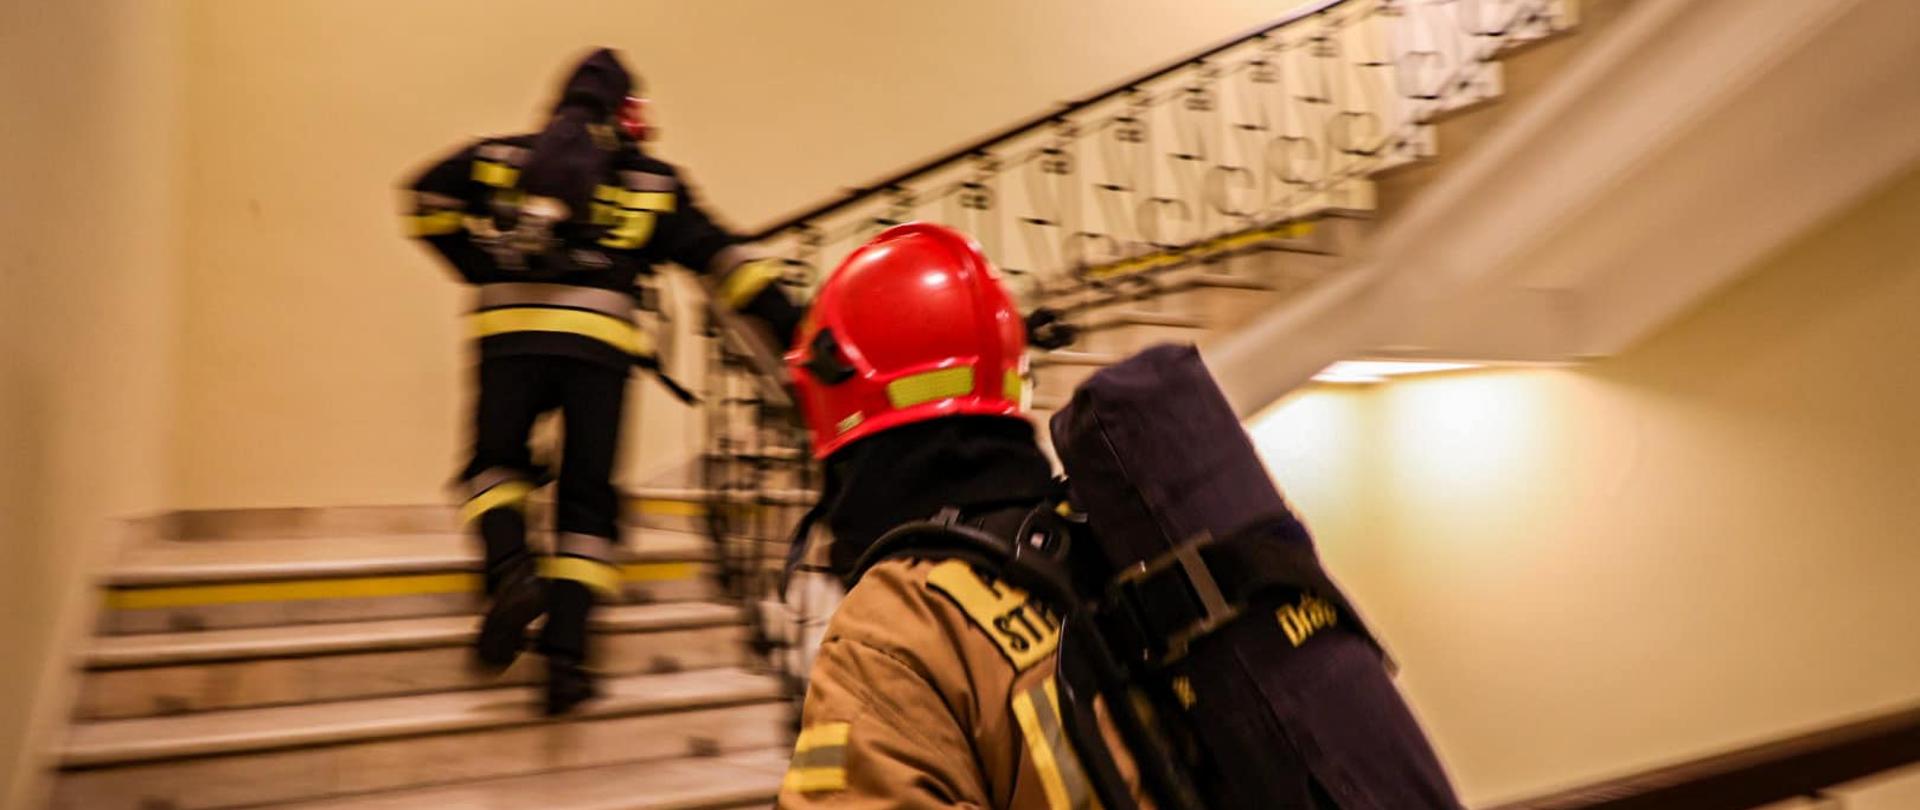 Dwóch strażaków wbiega po schodach po klatce schodowej, jeden za drugim. Obaj trzymają się poręczy. Ubrani są w ubrania specjalne, a na plecach mają założone aparaty powietrzne. 